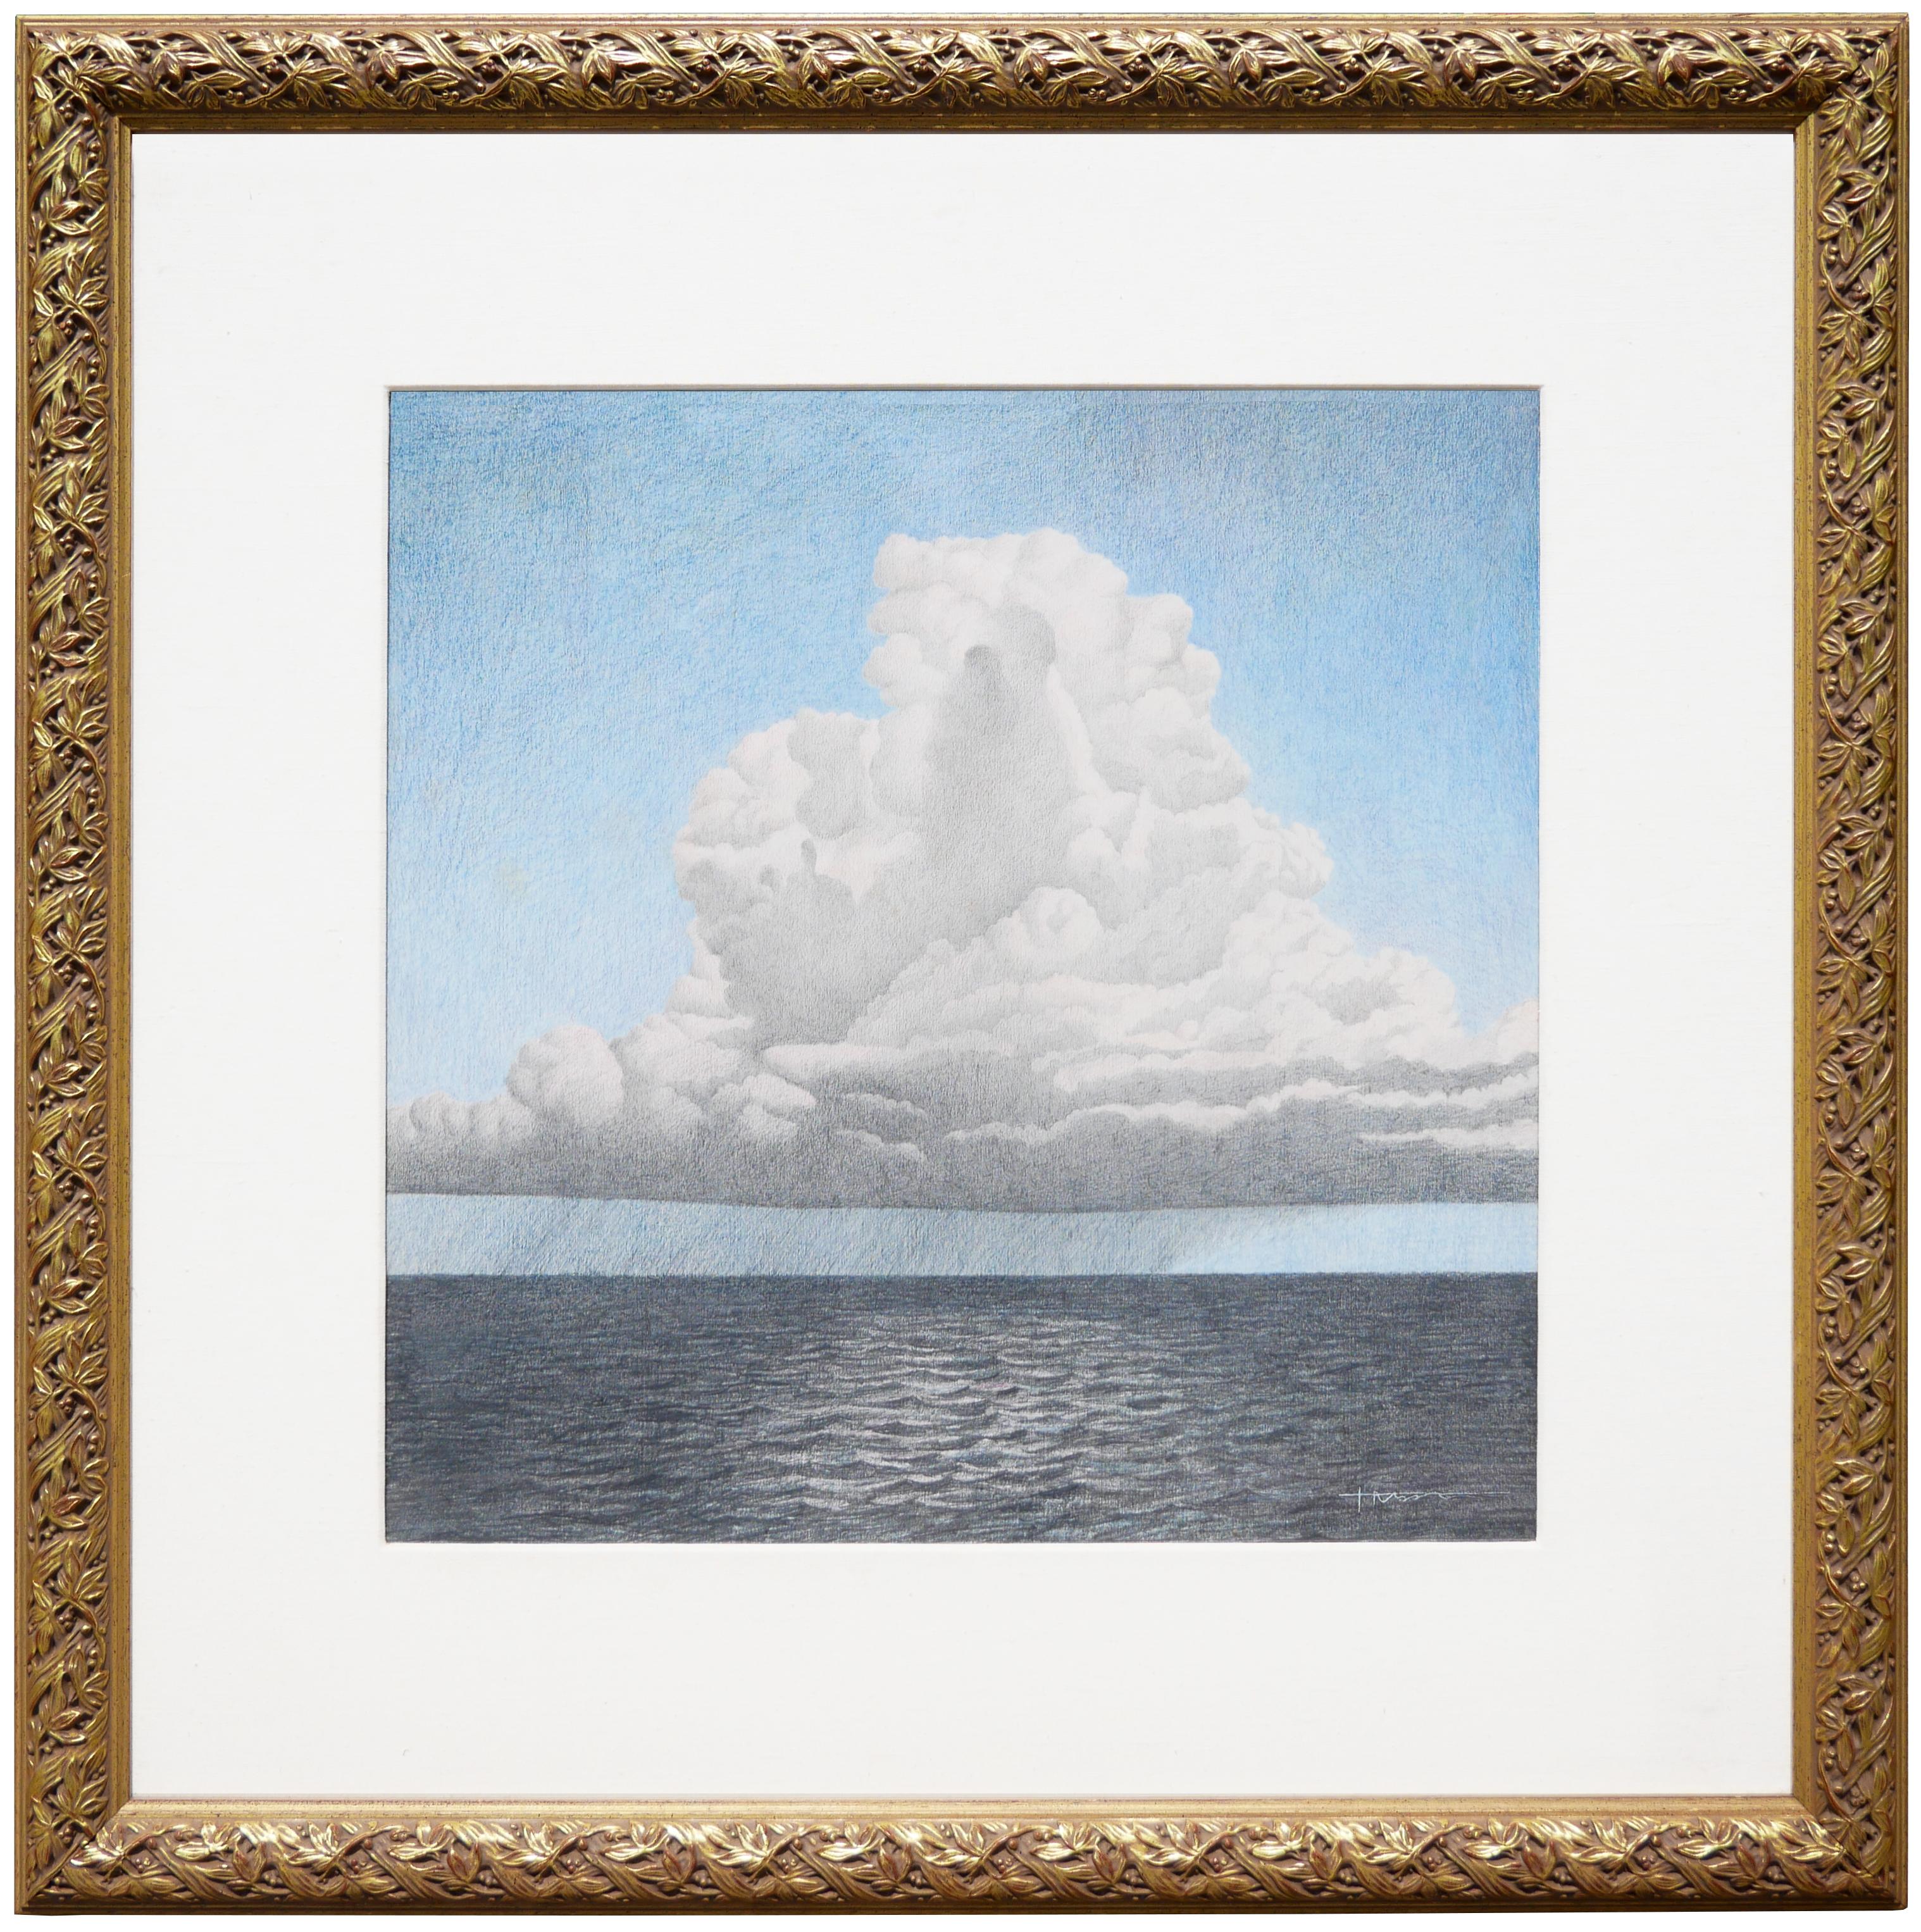 Pastellfarbene abstrakte surrealistische Meereslandschaft unter einer großen weißen Wolke-Zeichnung